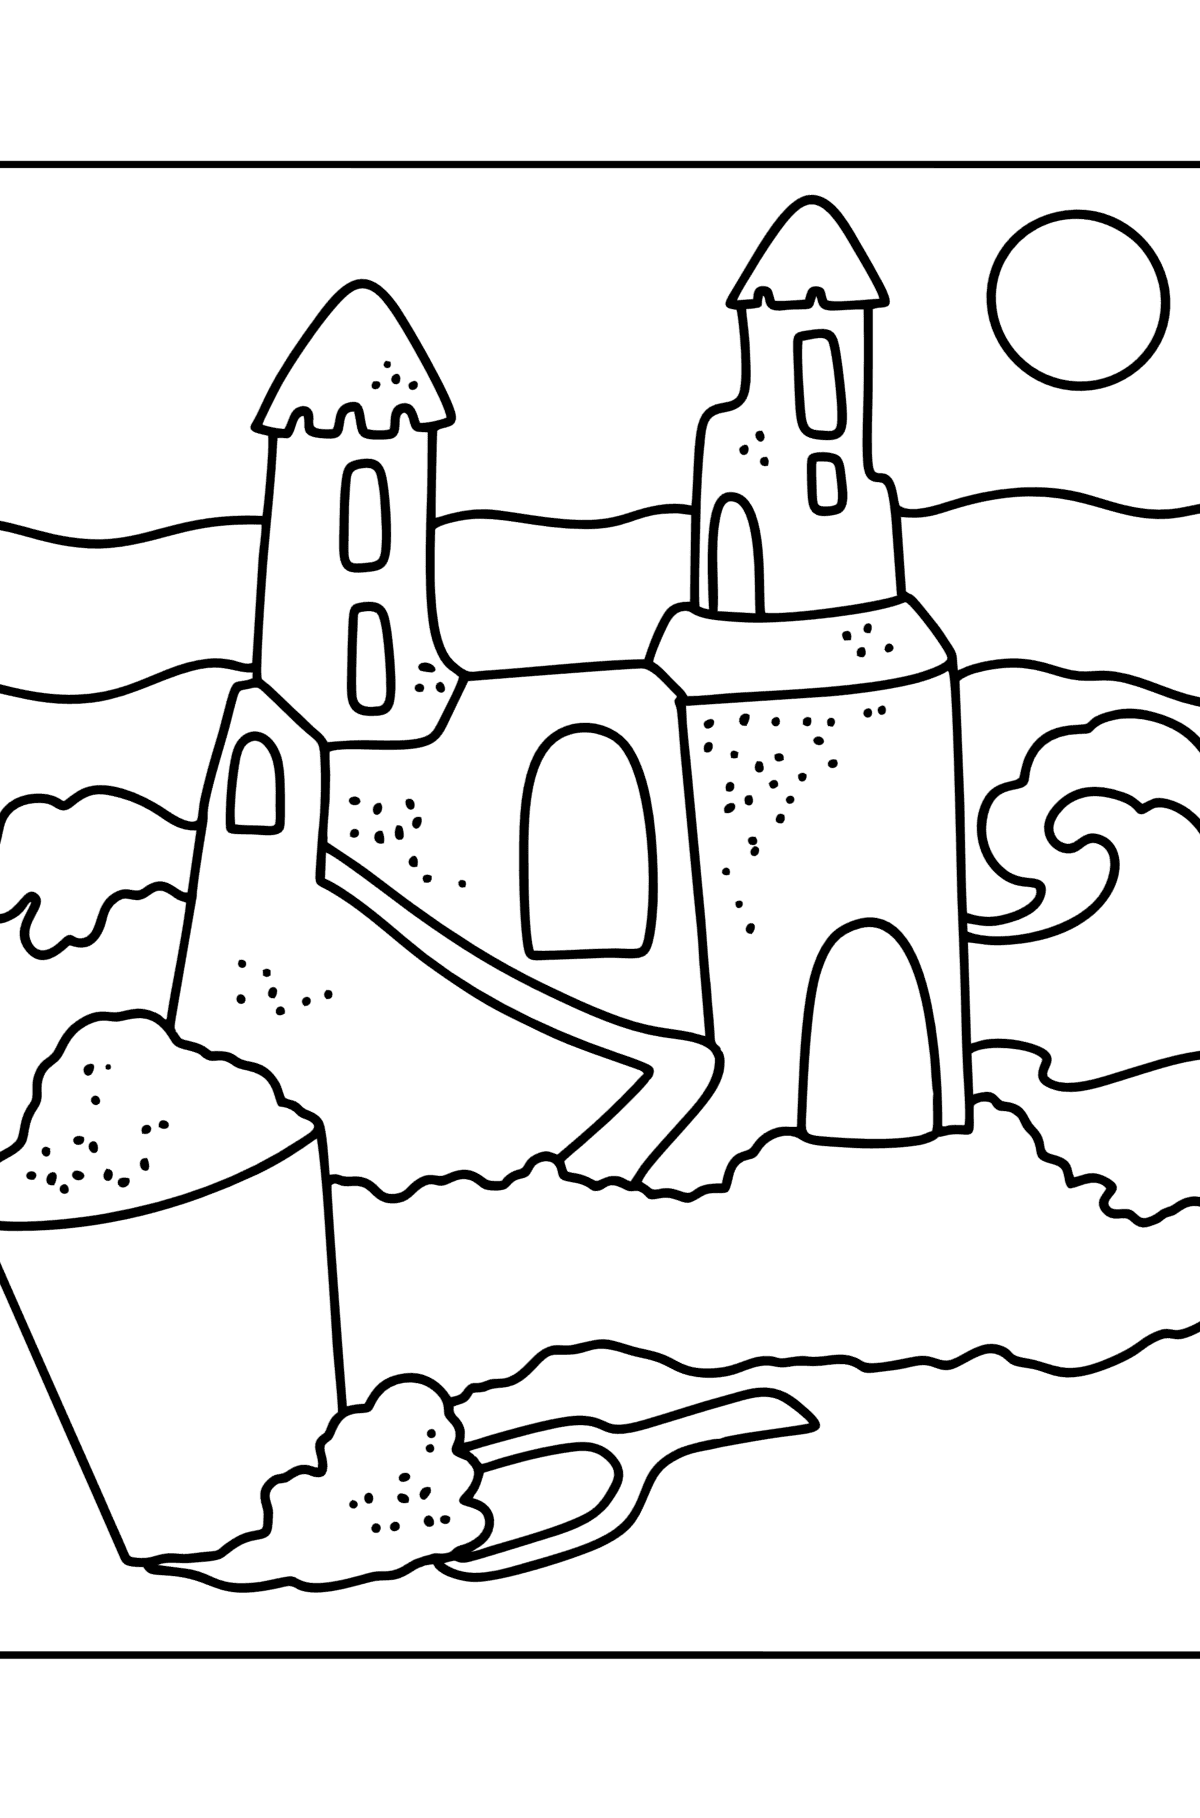 Desenho para colorir Verão - Castelo de areia - Imagens para Colorir para Crianças